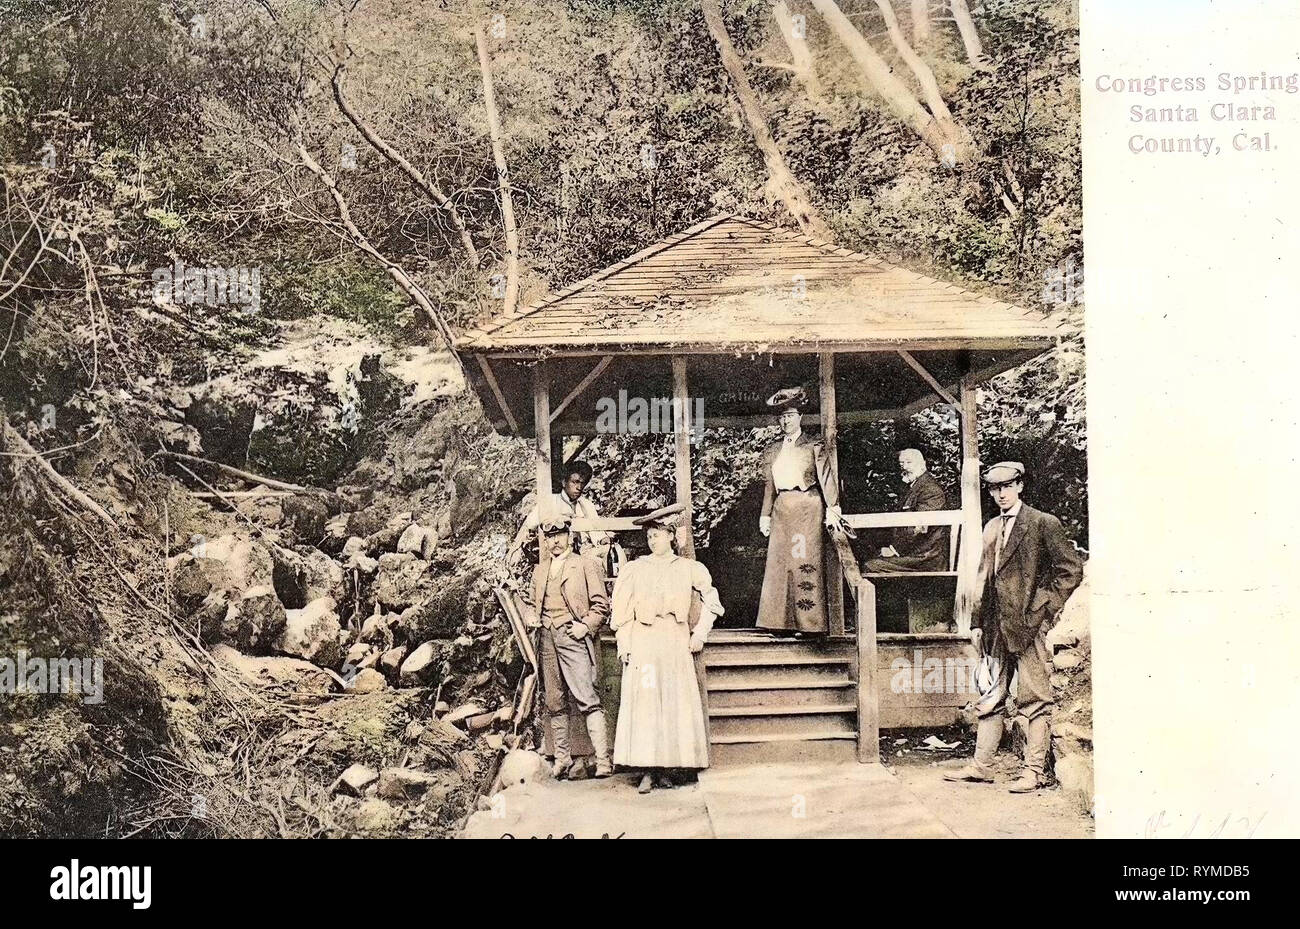 Federn von Kalifornien, Felsbrocken in Kalifornien, Santa Clara County, Kalifornien, 1906, Santa Clara County, Kongress Springs, Vereinigte Staaten von Amerika Stockfoto